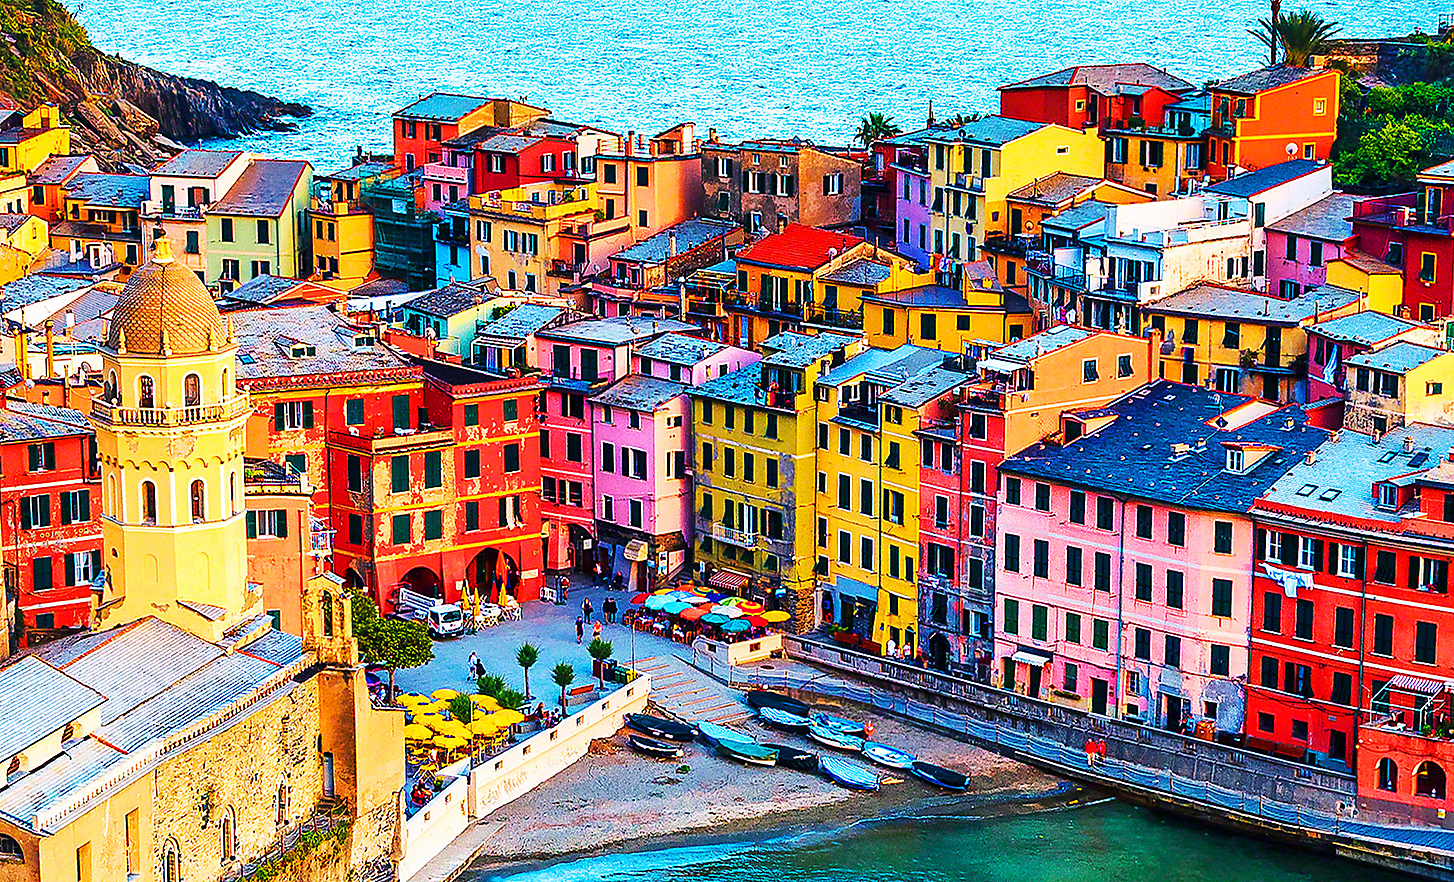 Imagem iluminada pelo sol de uma pequena cidade costeira com uma variedade de edifícios, cafés e barcos de pesca de cores vivas